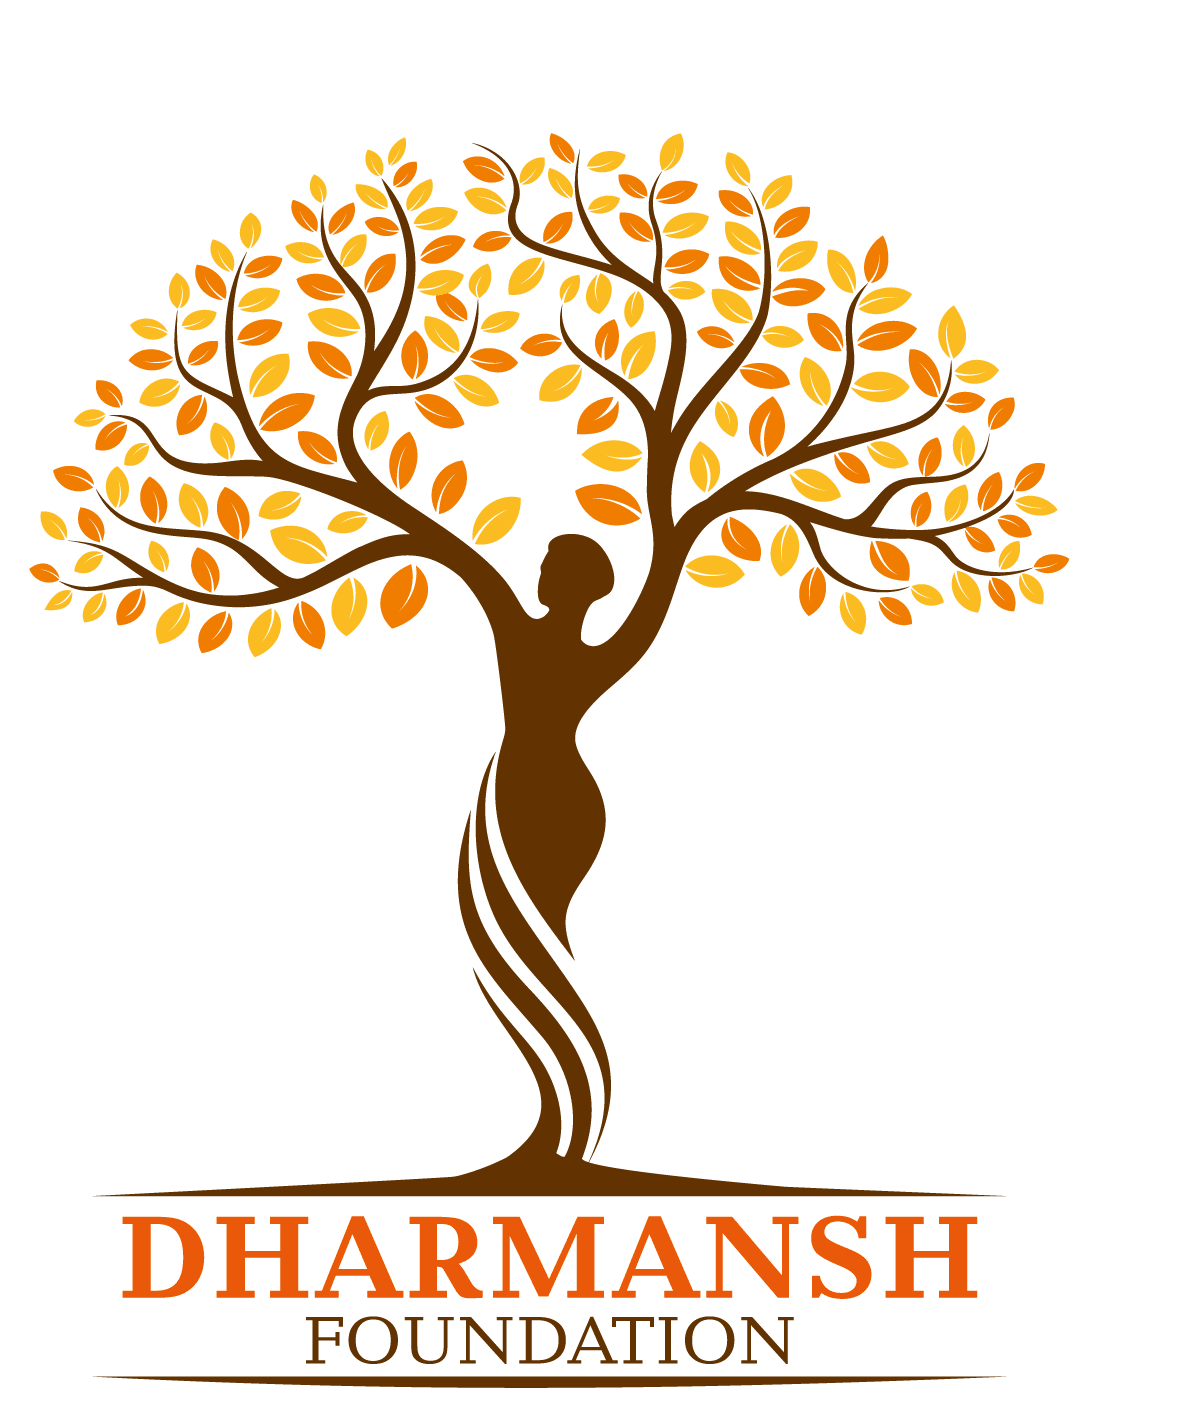 Dharmanshfoundation